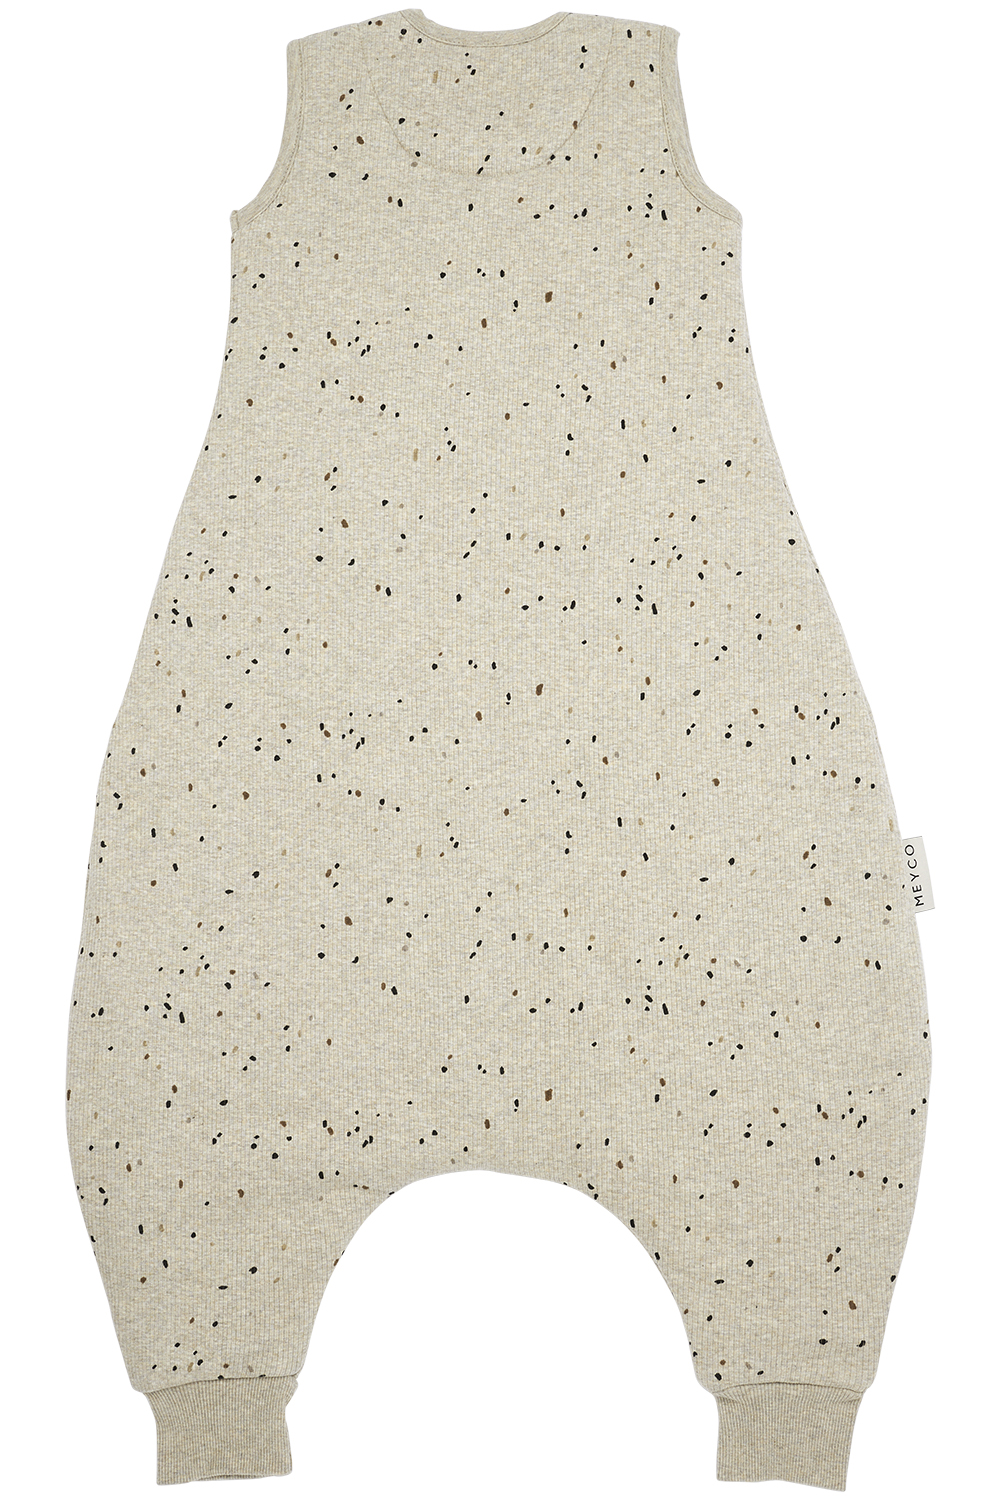 Baby winter slaapoverall jumper Rib Mini Spot - sand melange - 92cm